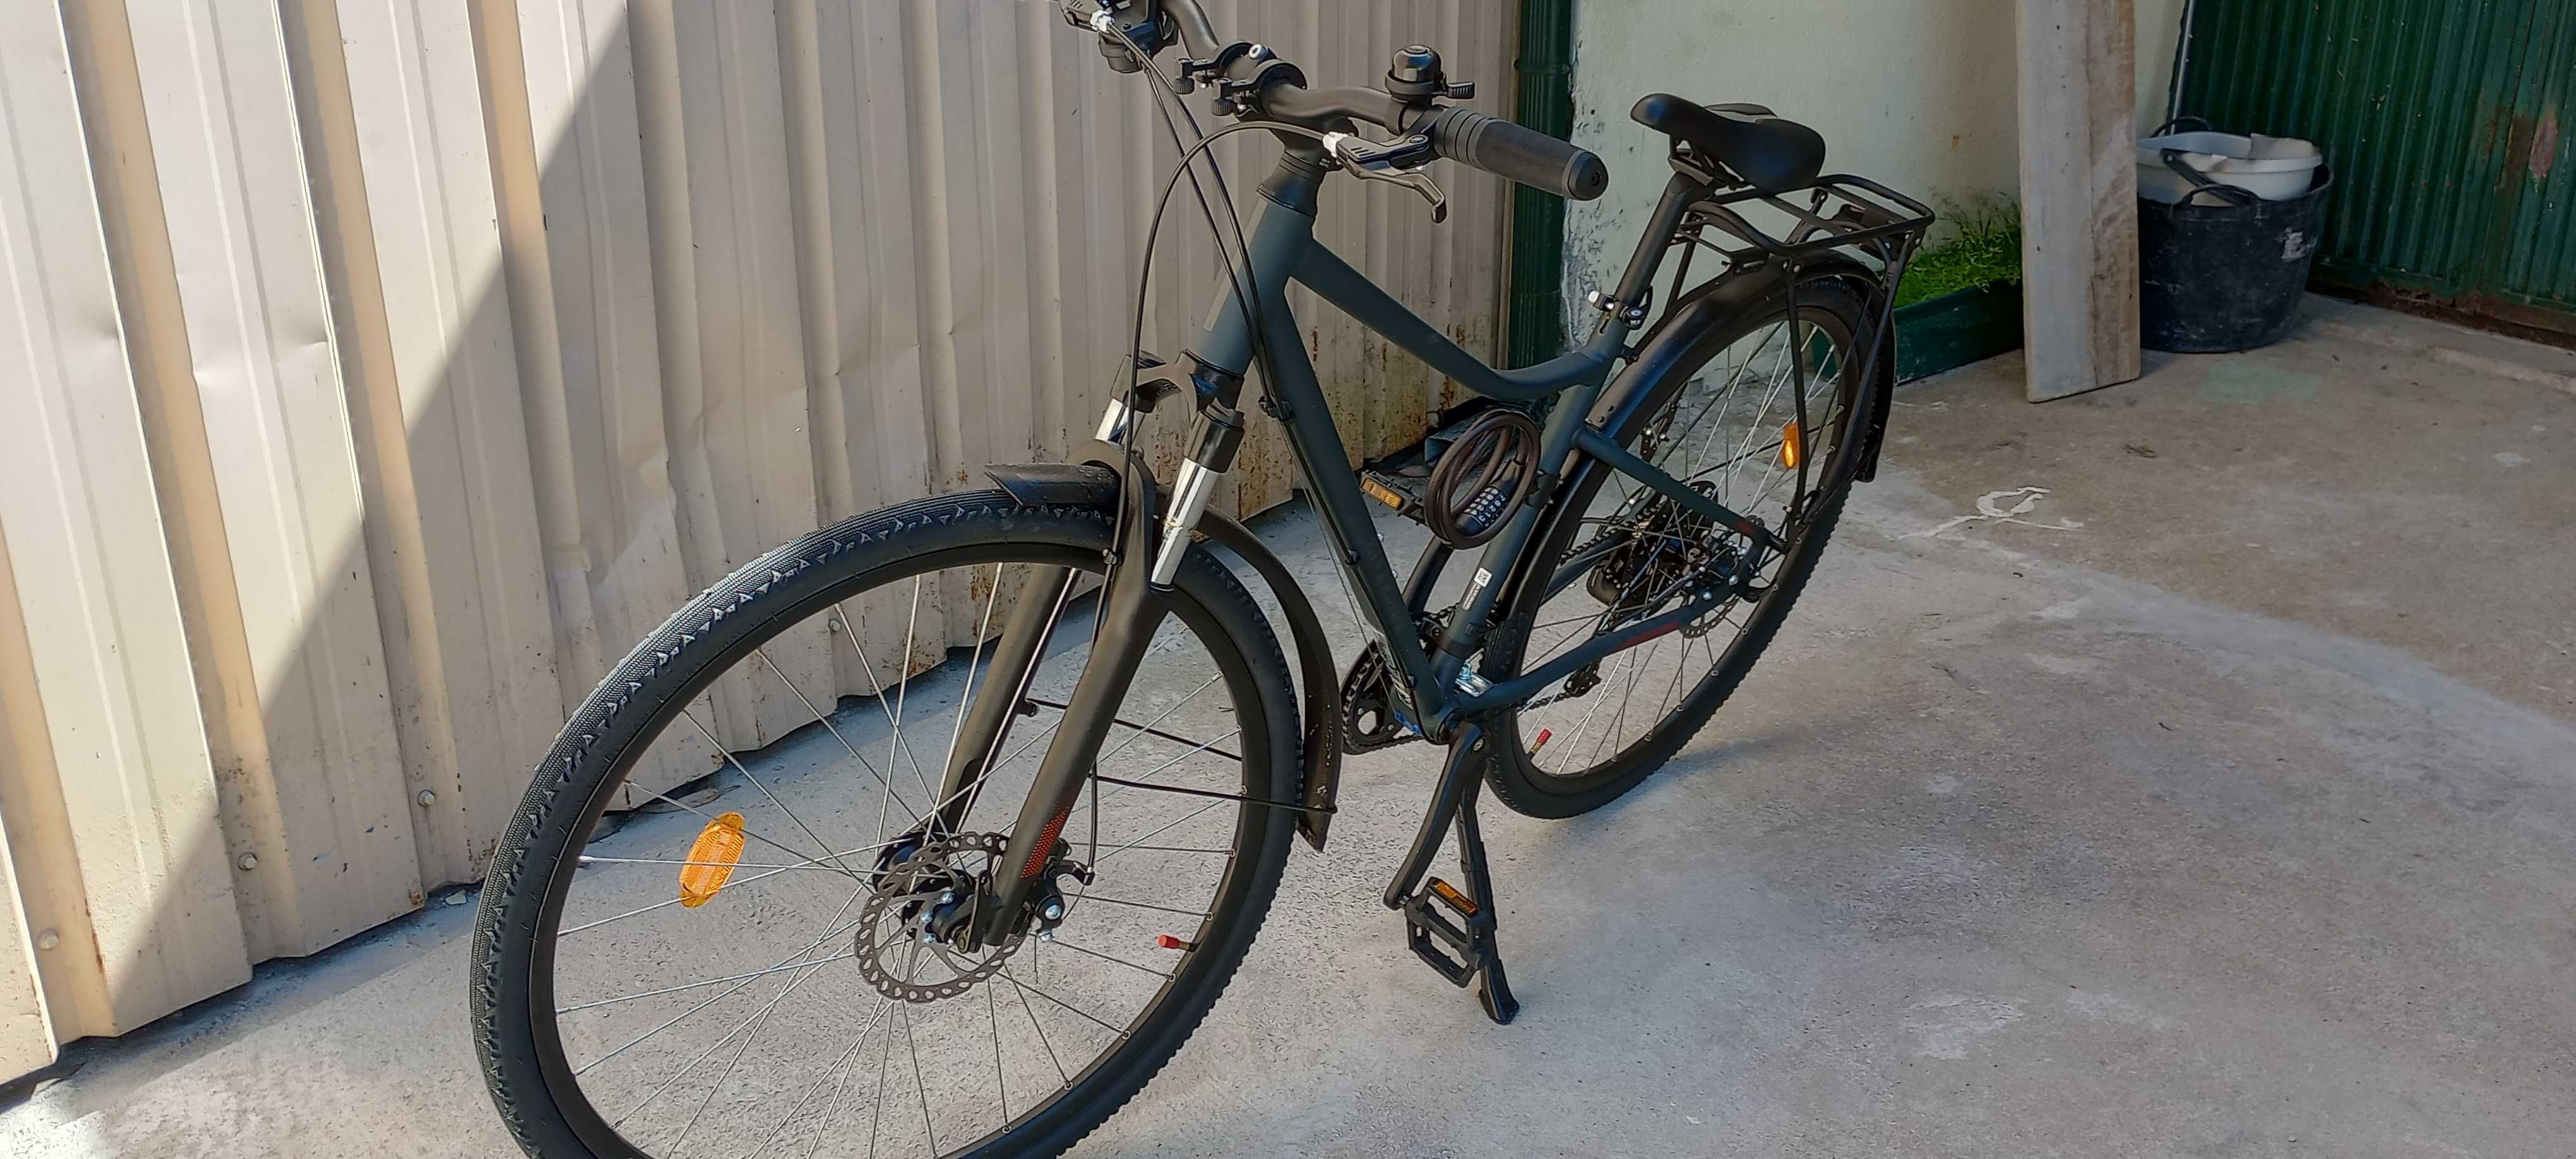 Bicicleta completa com mudanças, luz traseira e dianteira em led,